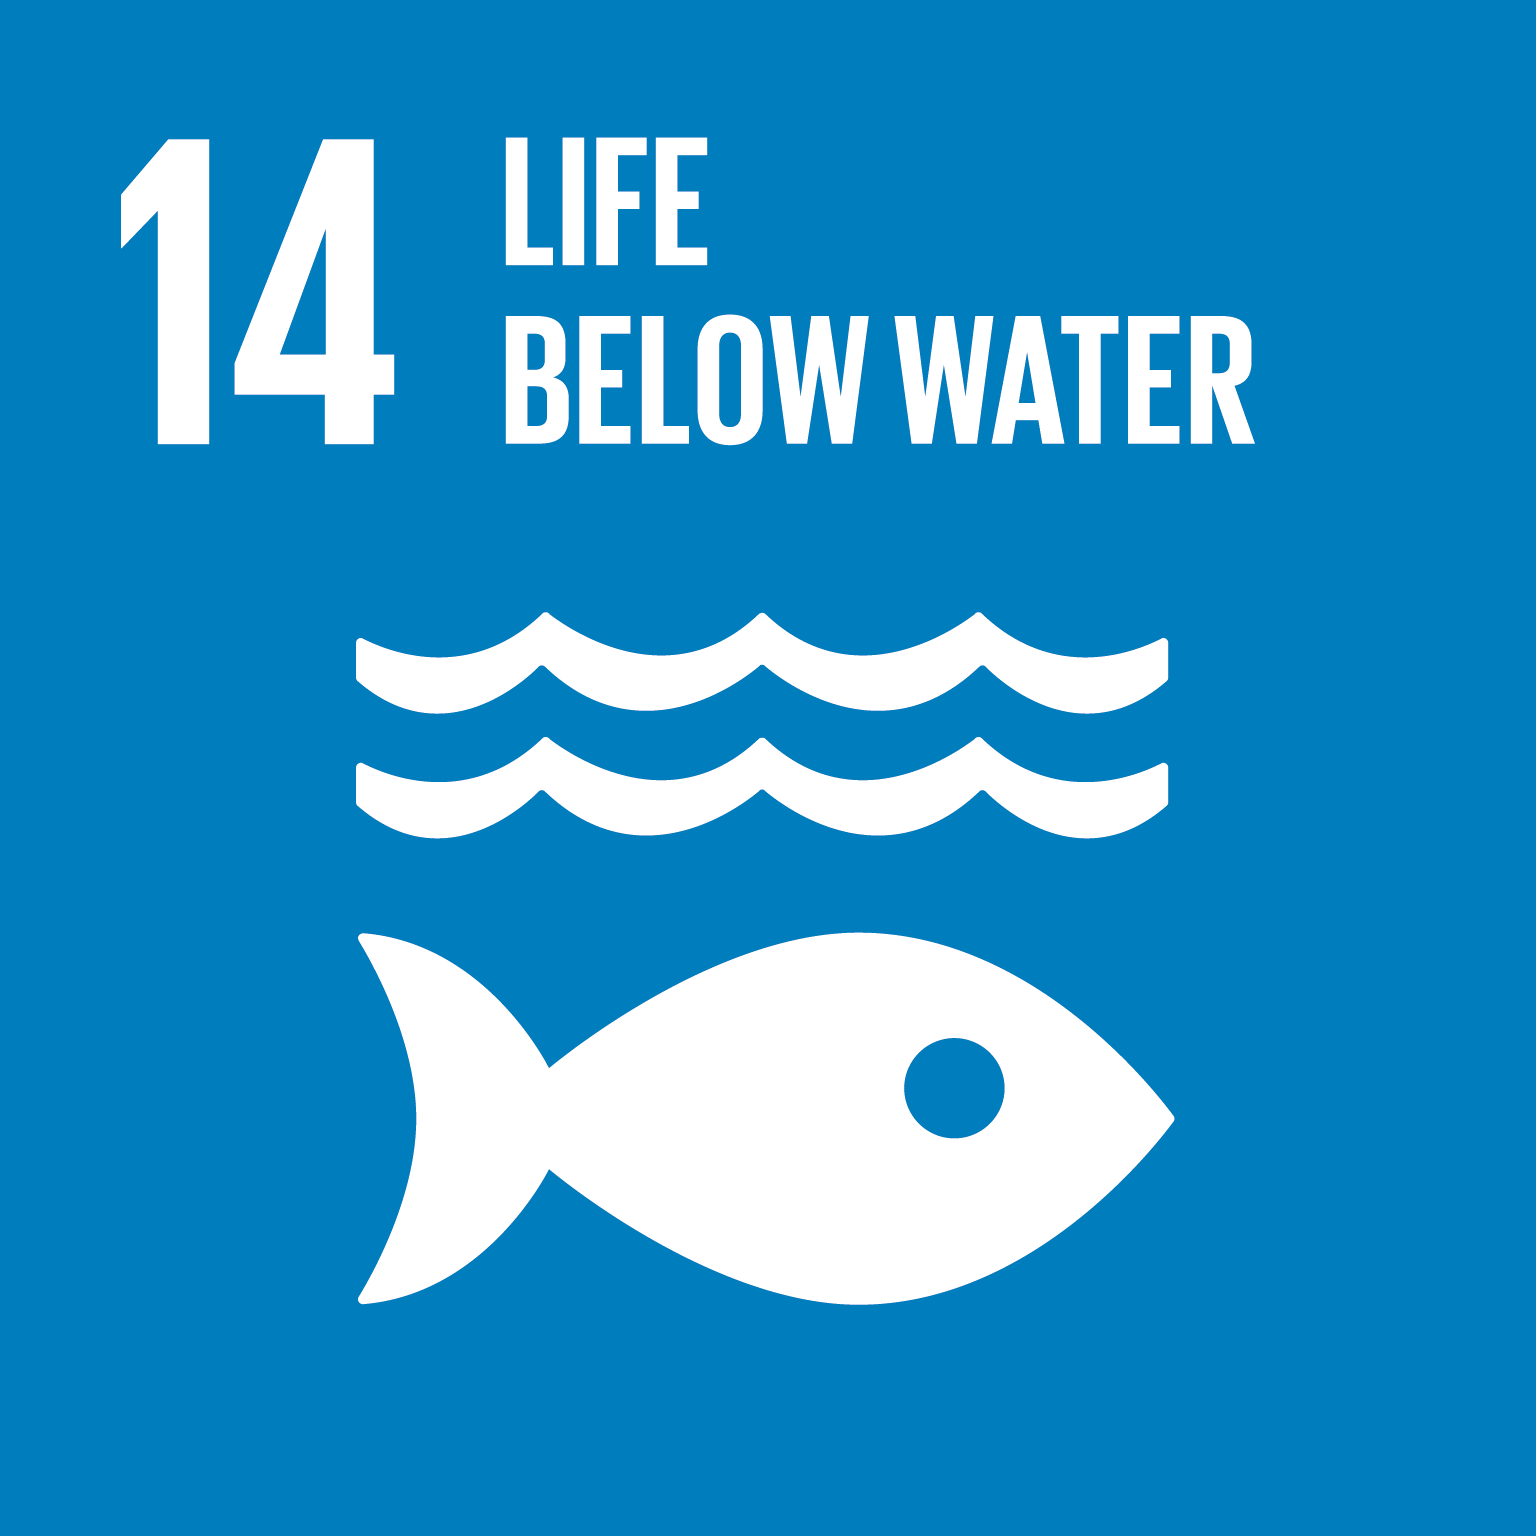 Goal 14. Life below water